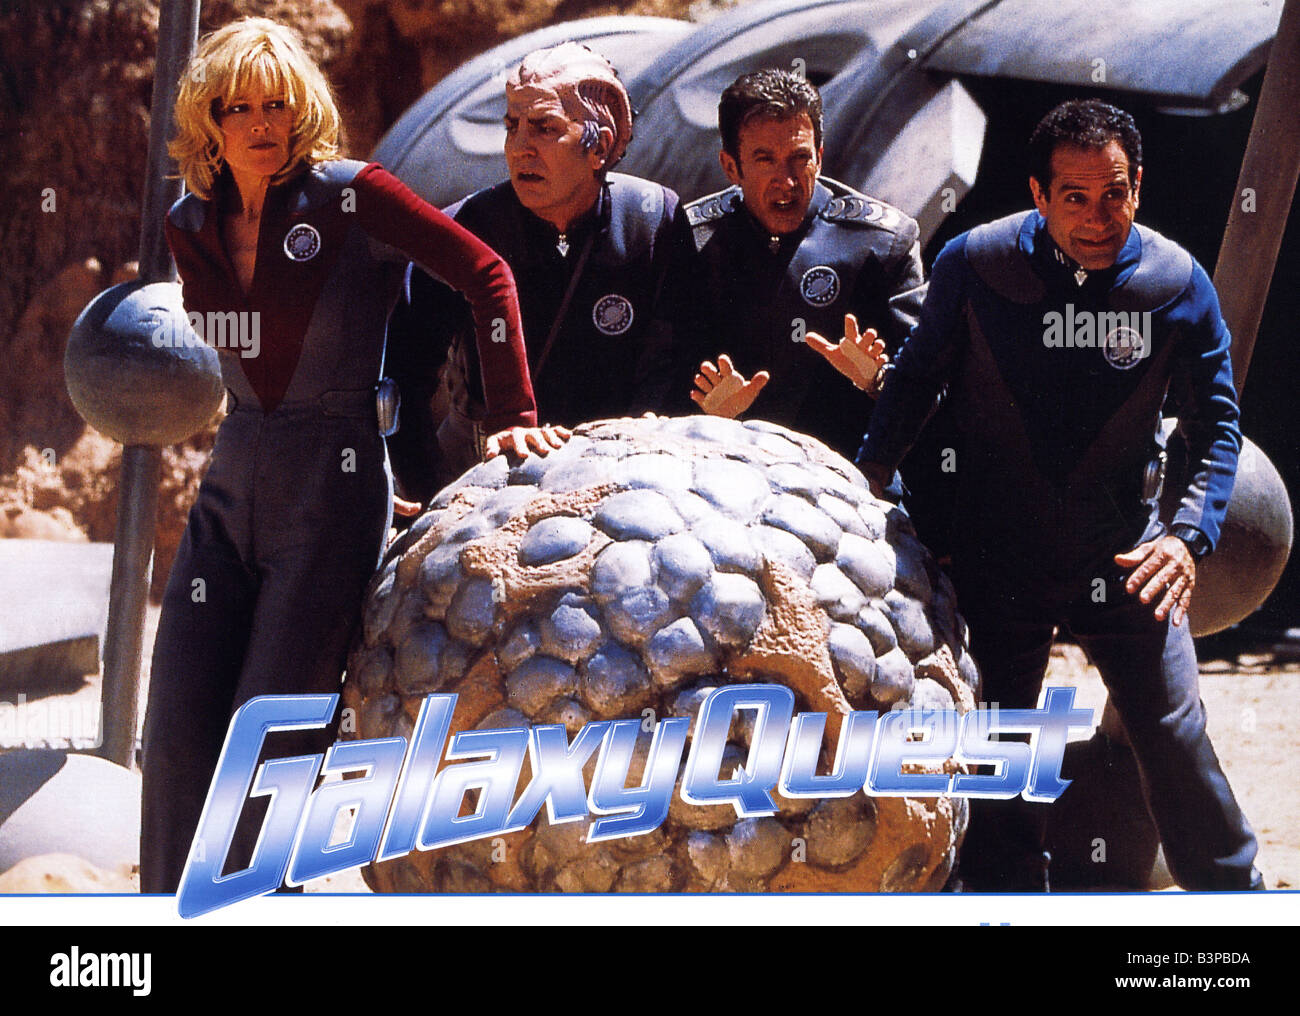 GALAXY QUEST 1999 DreamWorks Film mit Sigourney Weaver auf der linken Seite Stockfoto